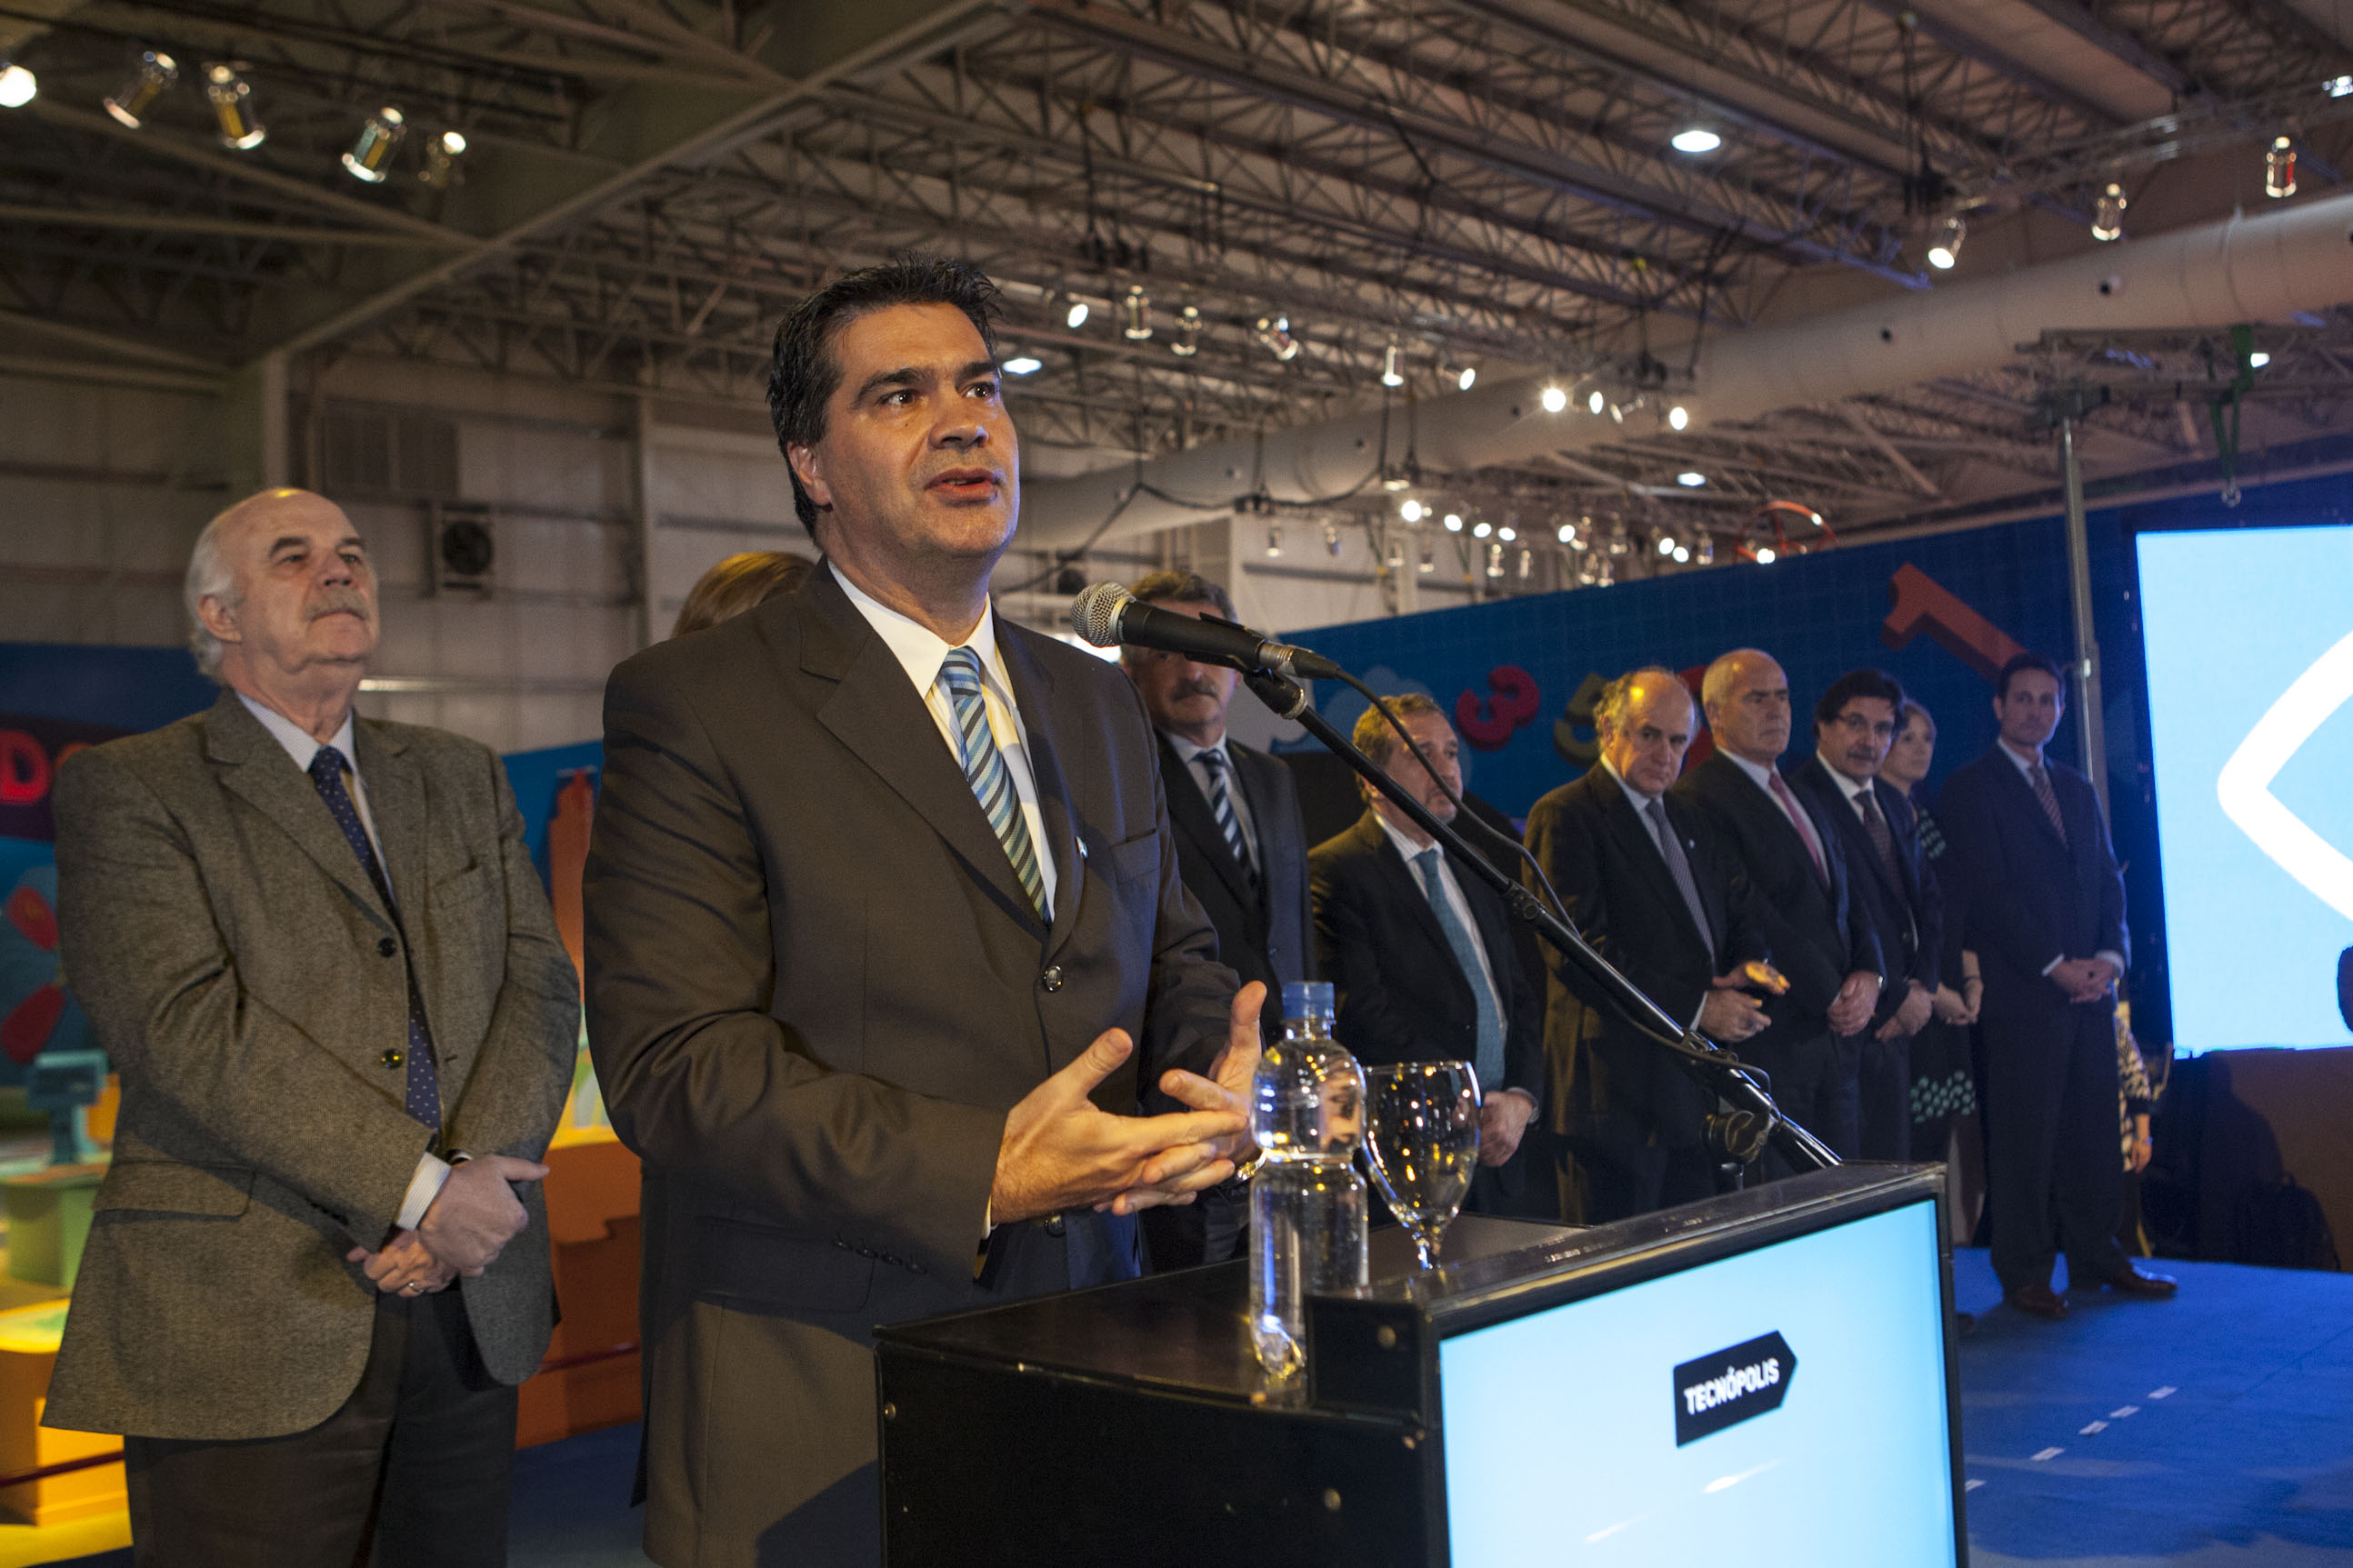 El Jefe de Gabinete inauguró la edición 2014 de Tecnópolis